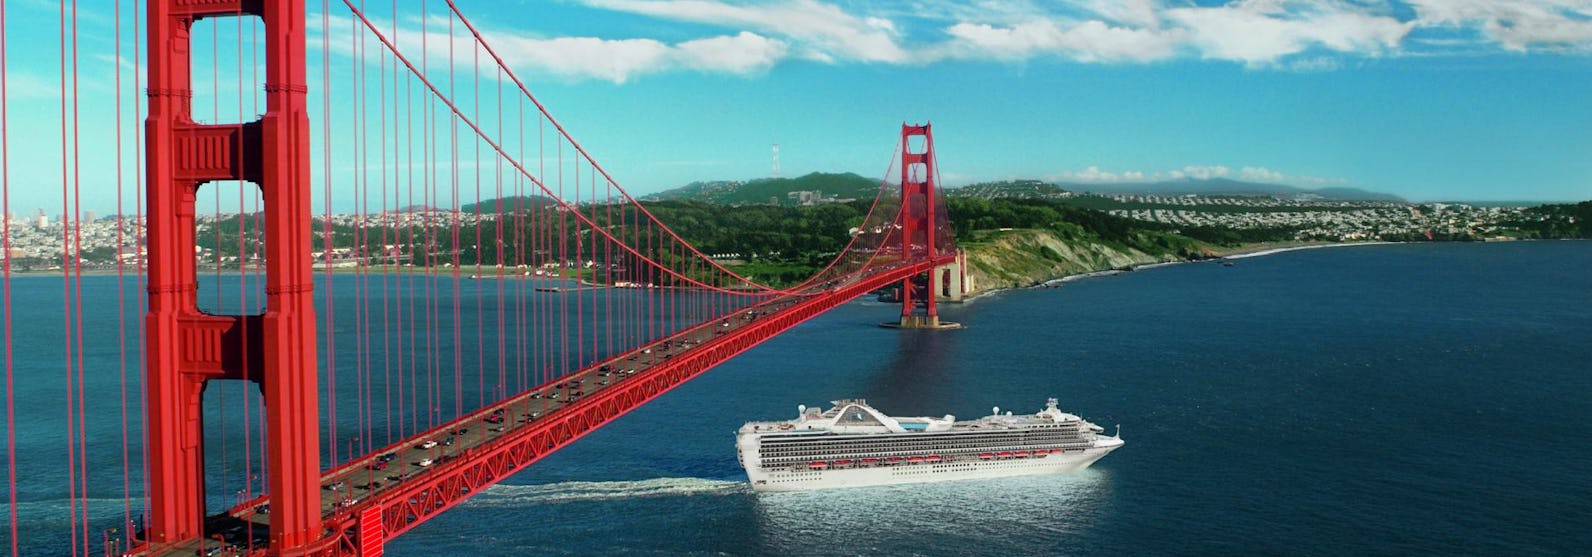 Fartyget Grand Princess kryssar under den ikoniska och röda Golden Gate-bron i San Francisco. 